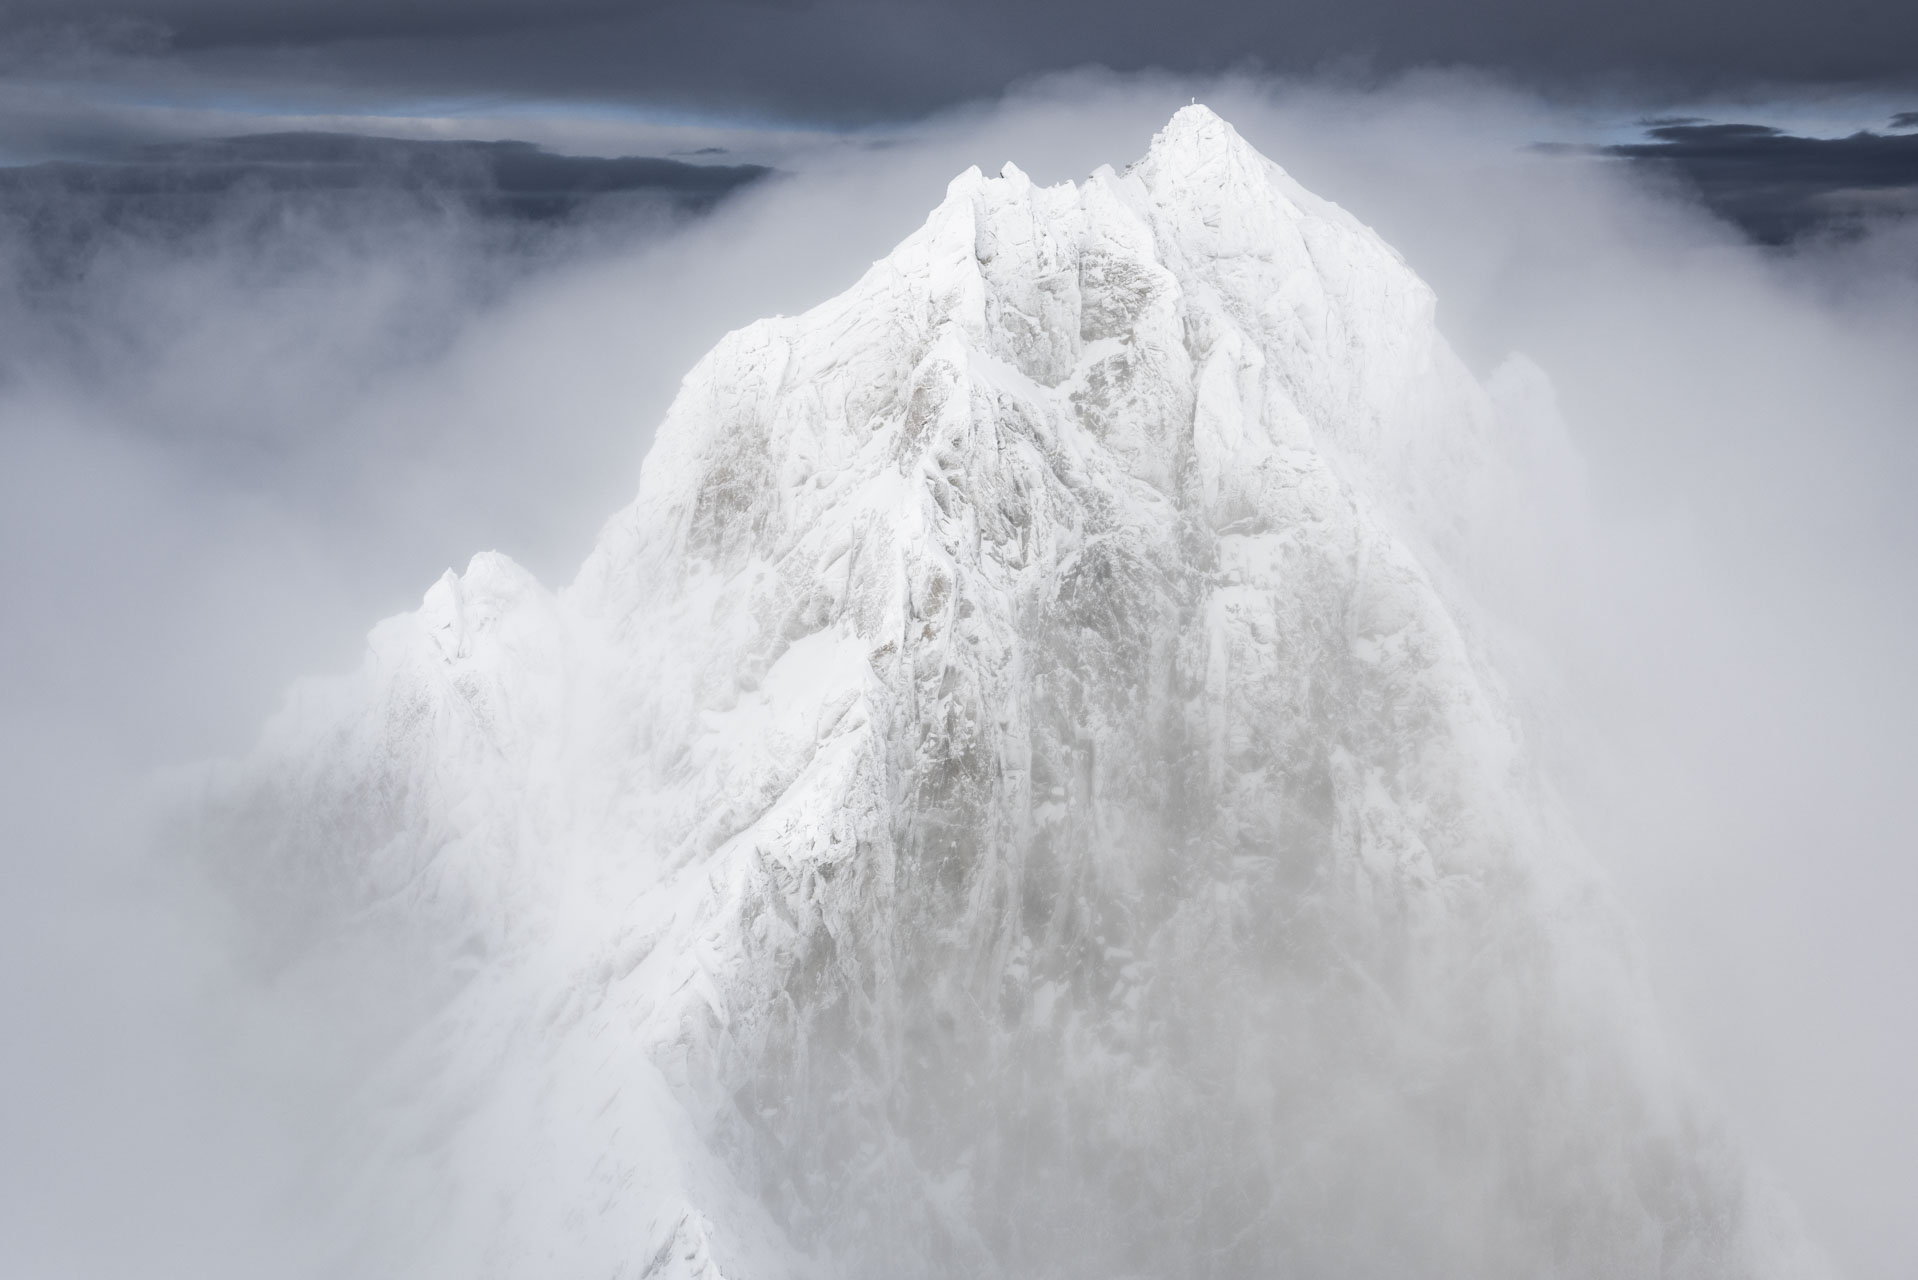 foto schweizer berge winter - wolkenmeer im nebelschleier